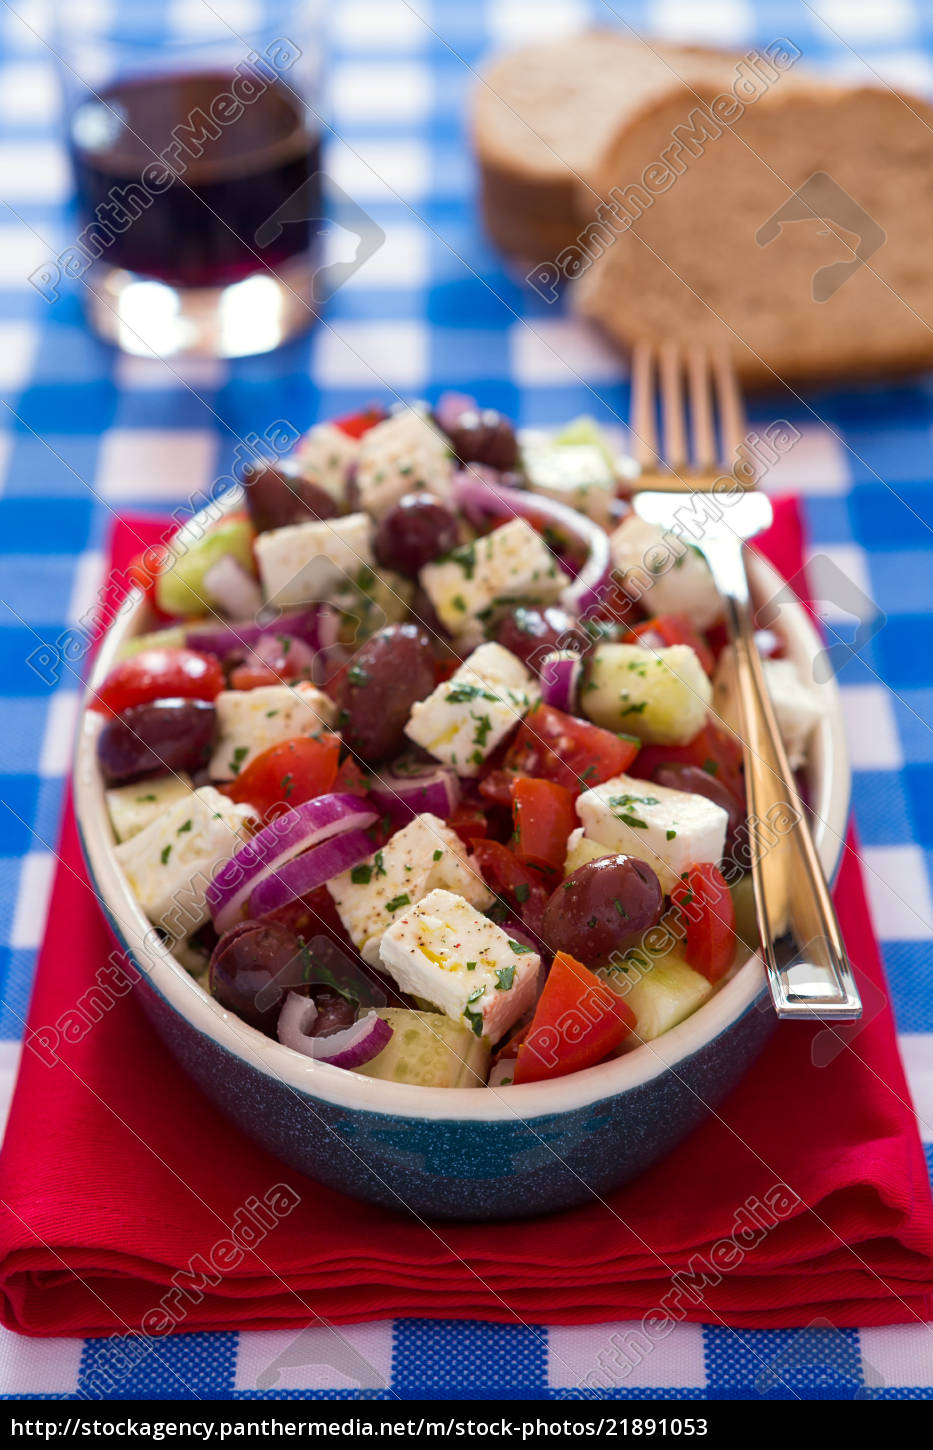 griechischer salat mit feta käse oliven tomaten - Lizenzfreies Bild ...